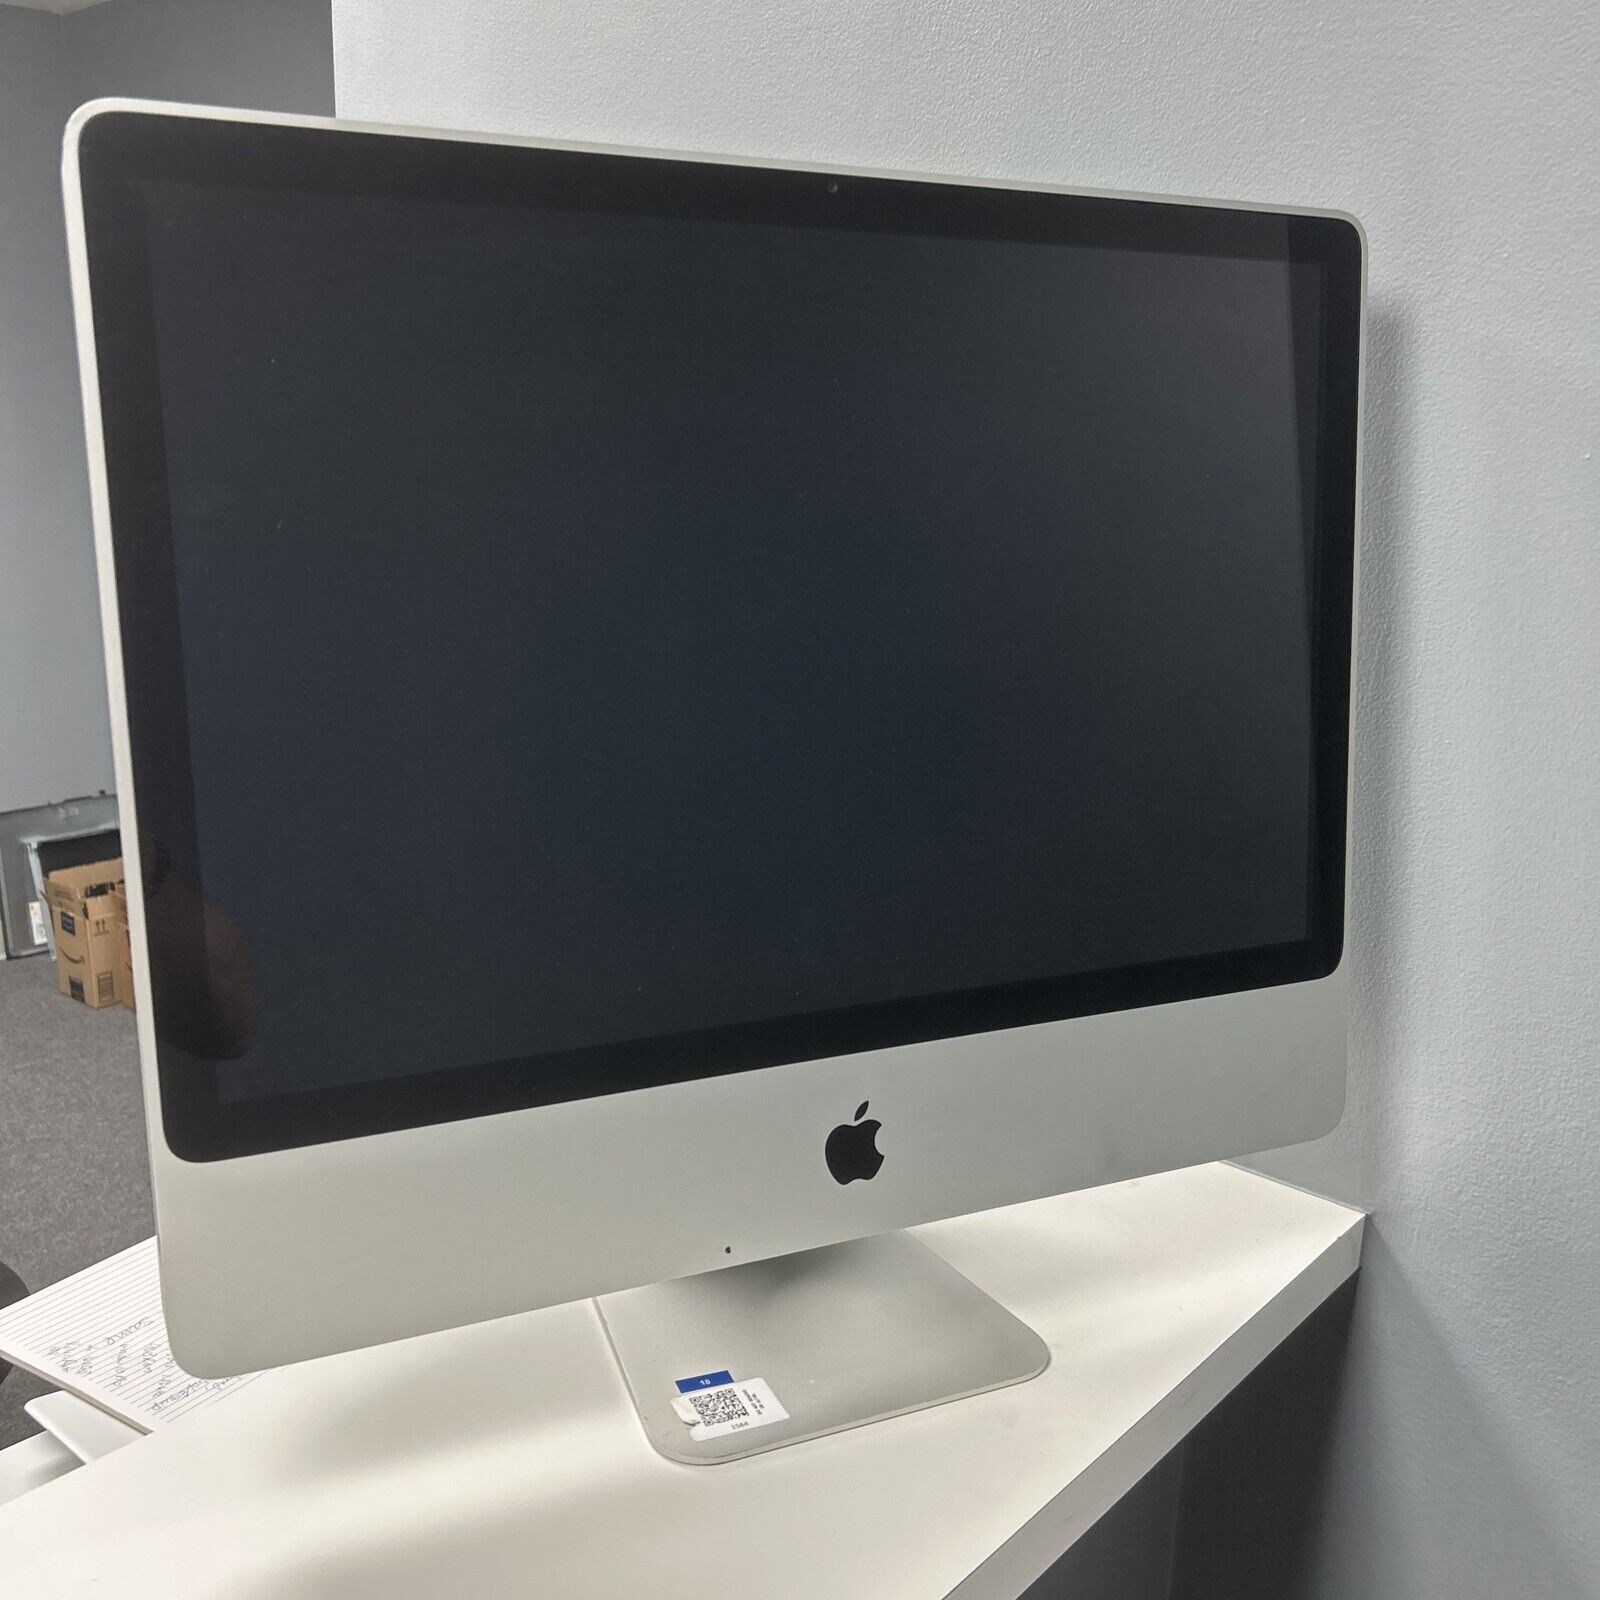 Qty 1 Apple iMac 